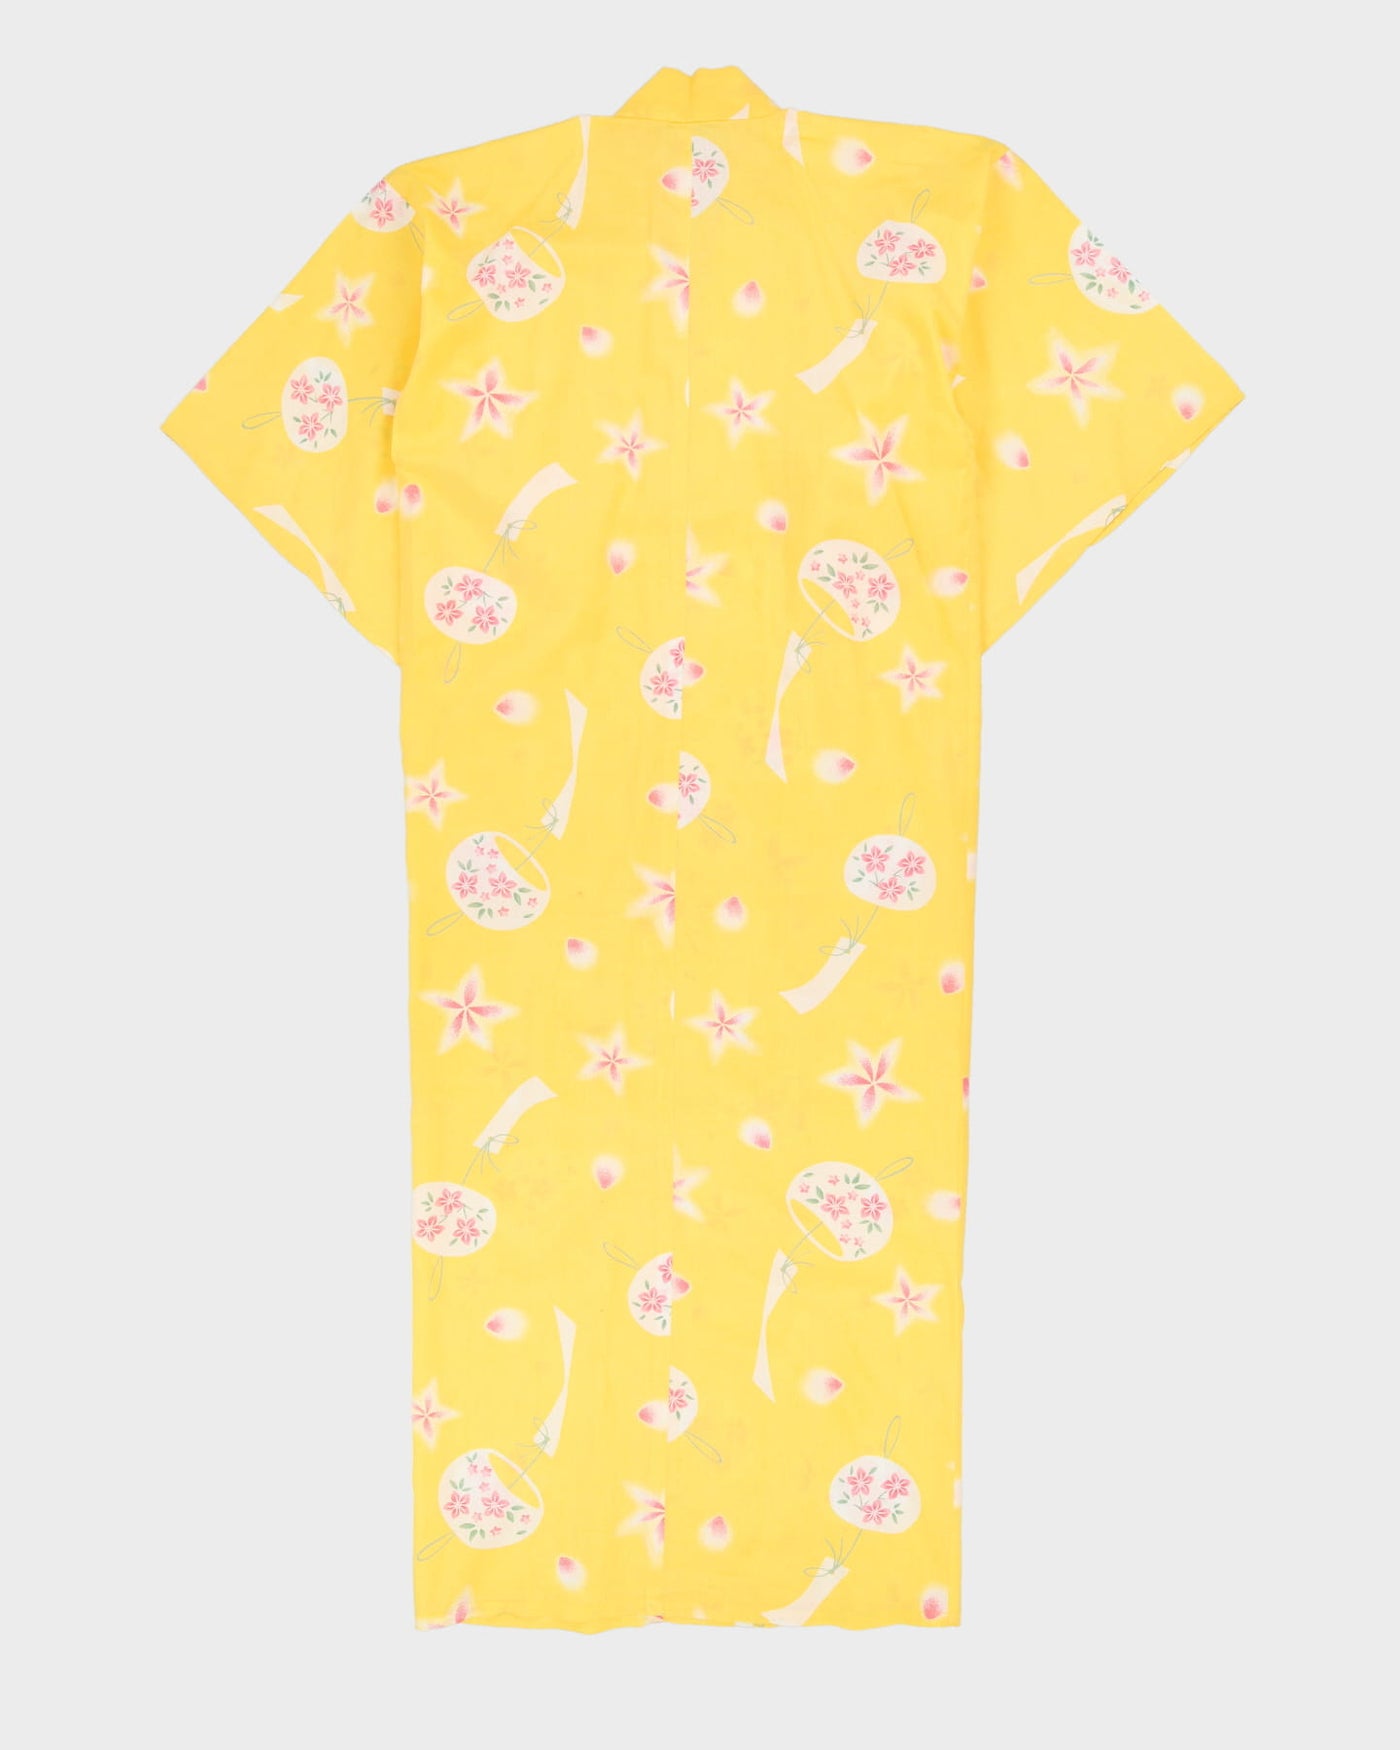 Yellow Patterned Yukata Summer Kimono - L